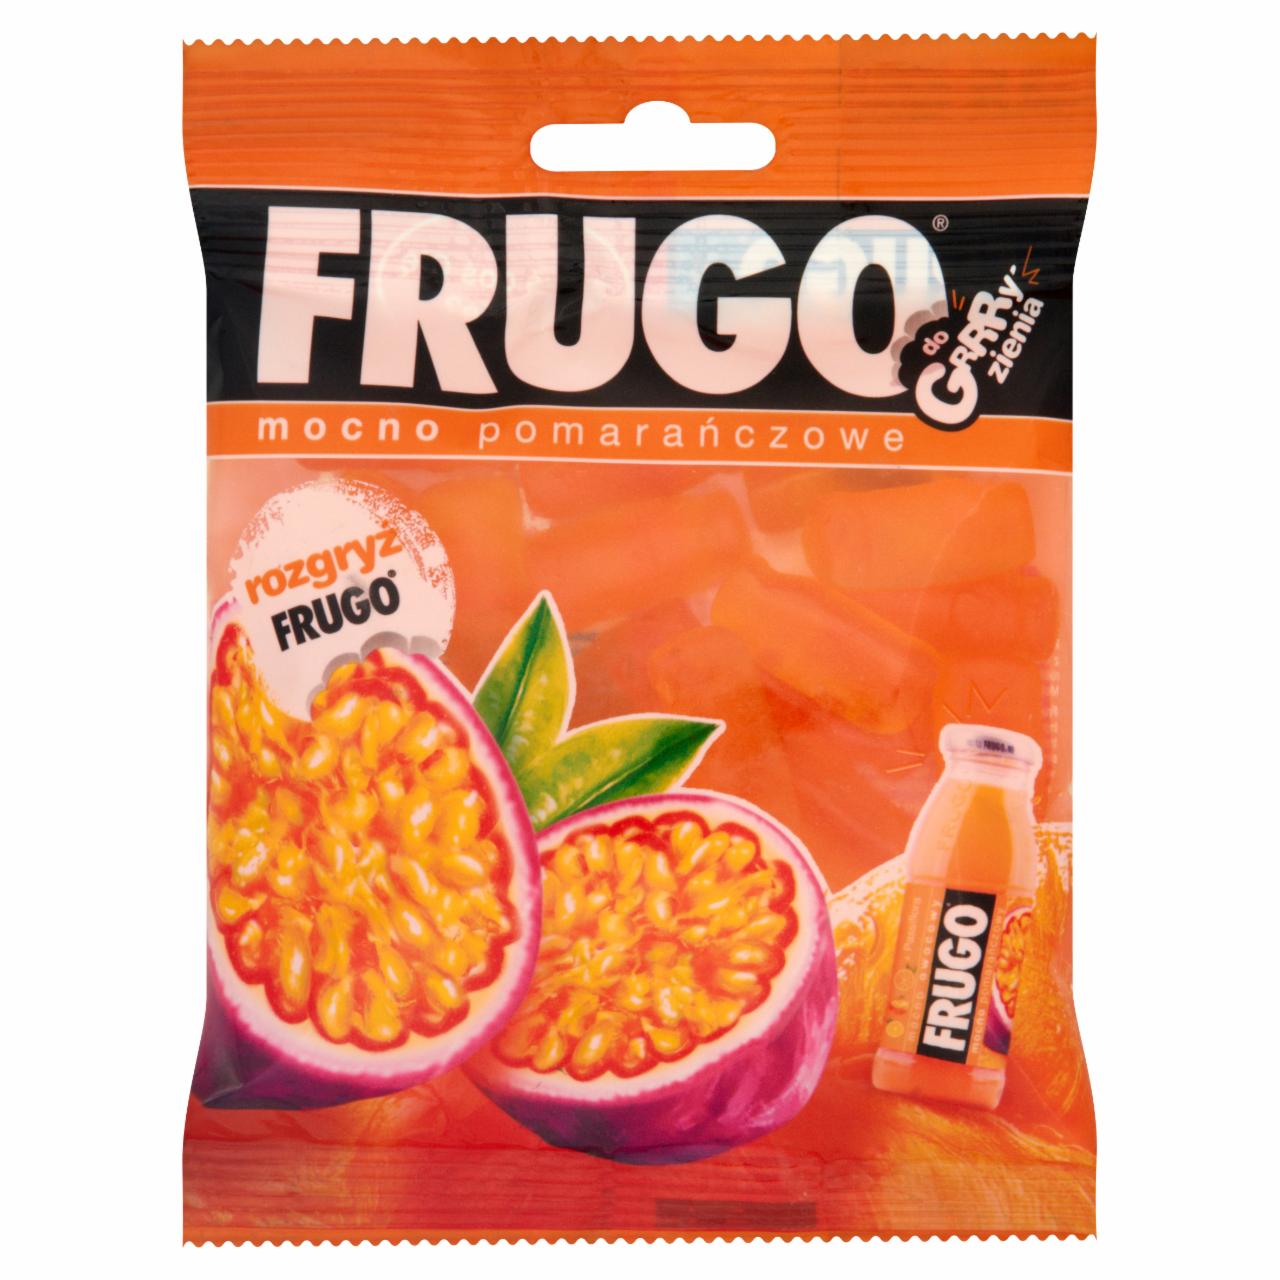 Zdjęcia - Frugo Pomarańczowe Żelki owocowe 100 g